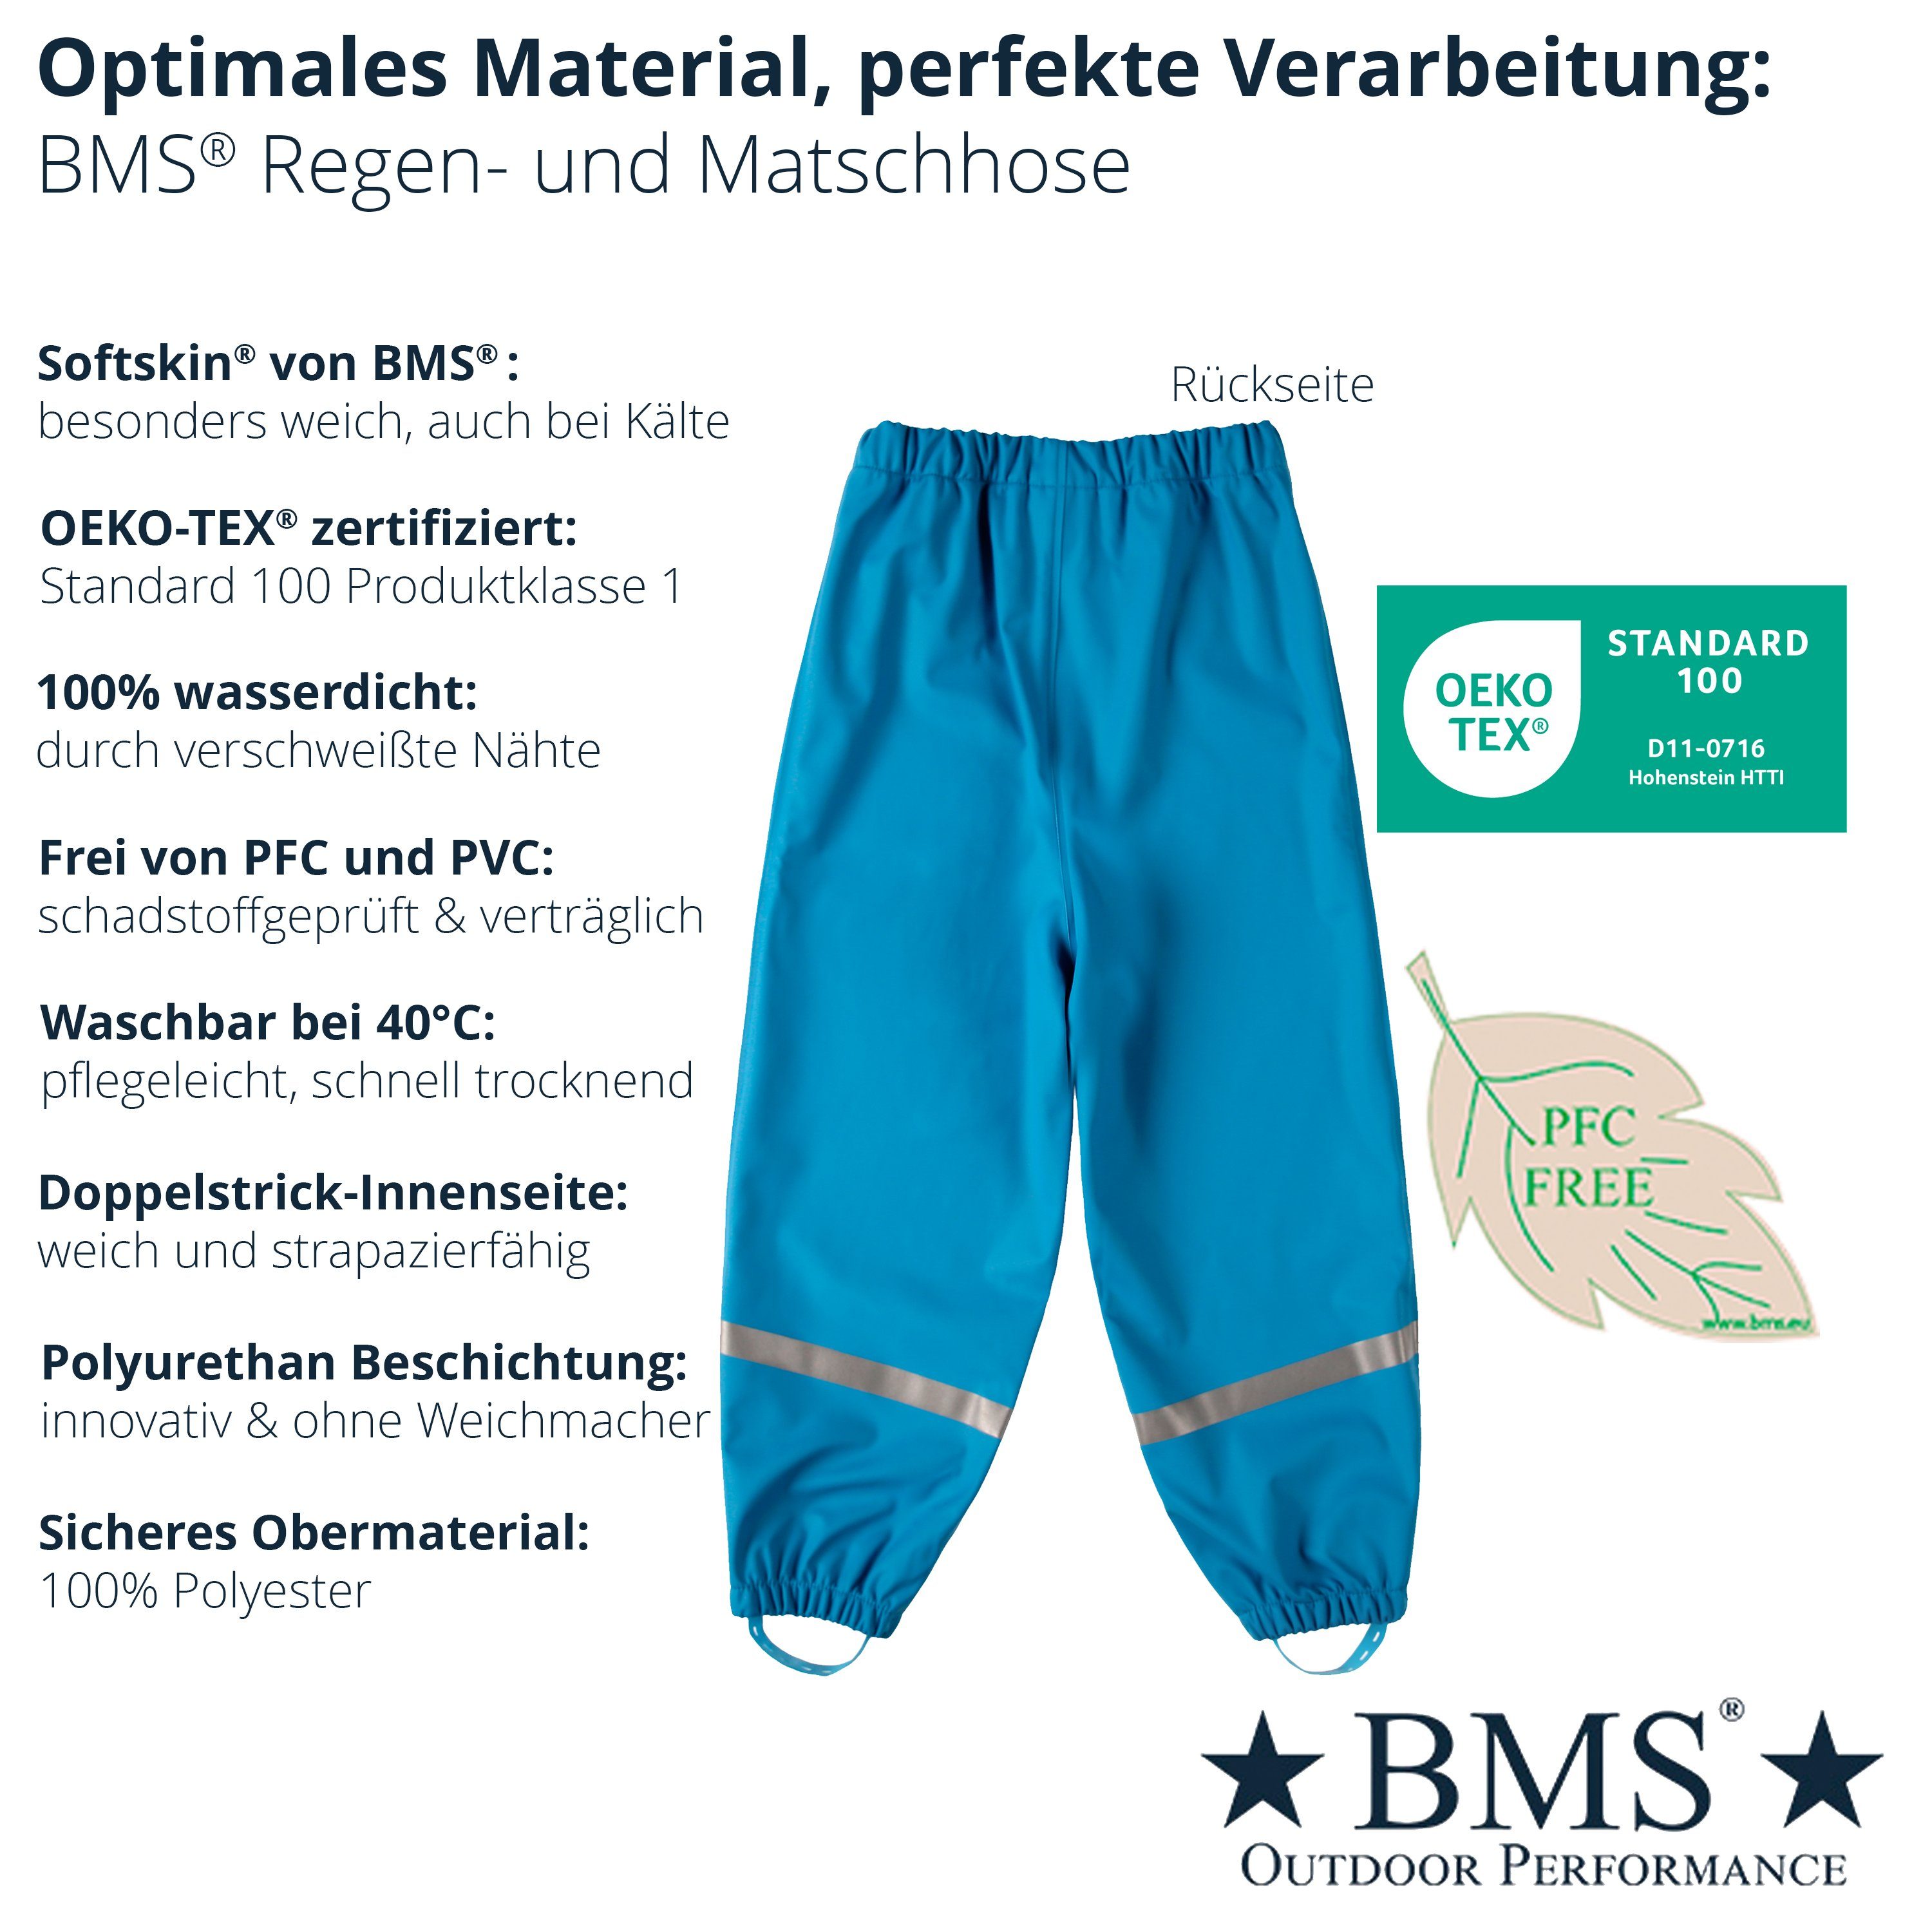 BMS Regen- und Matschhose 100% hellblau wasserdicht nachhaltig Waldkindergarten Kinder für Regenbundhose für den ideal BMS